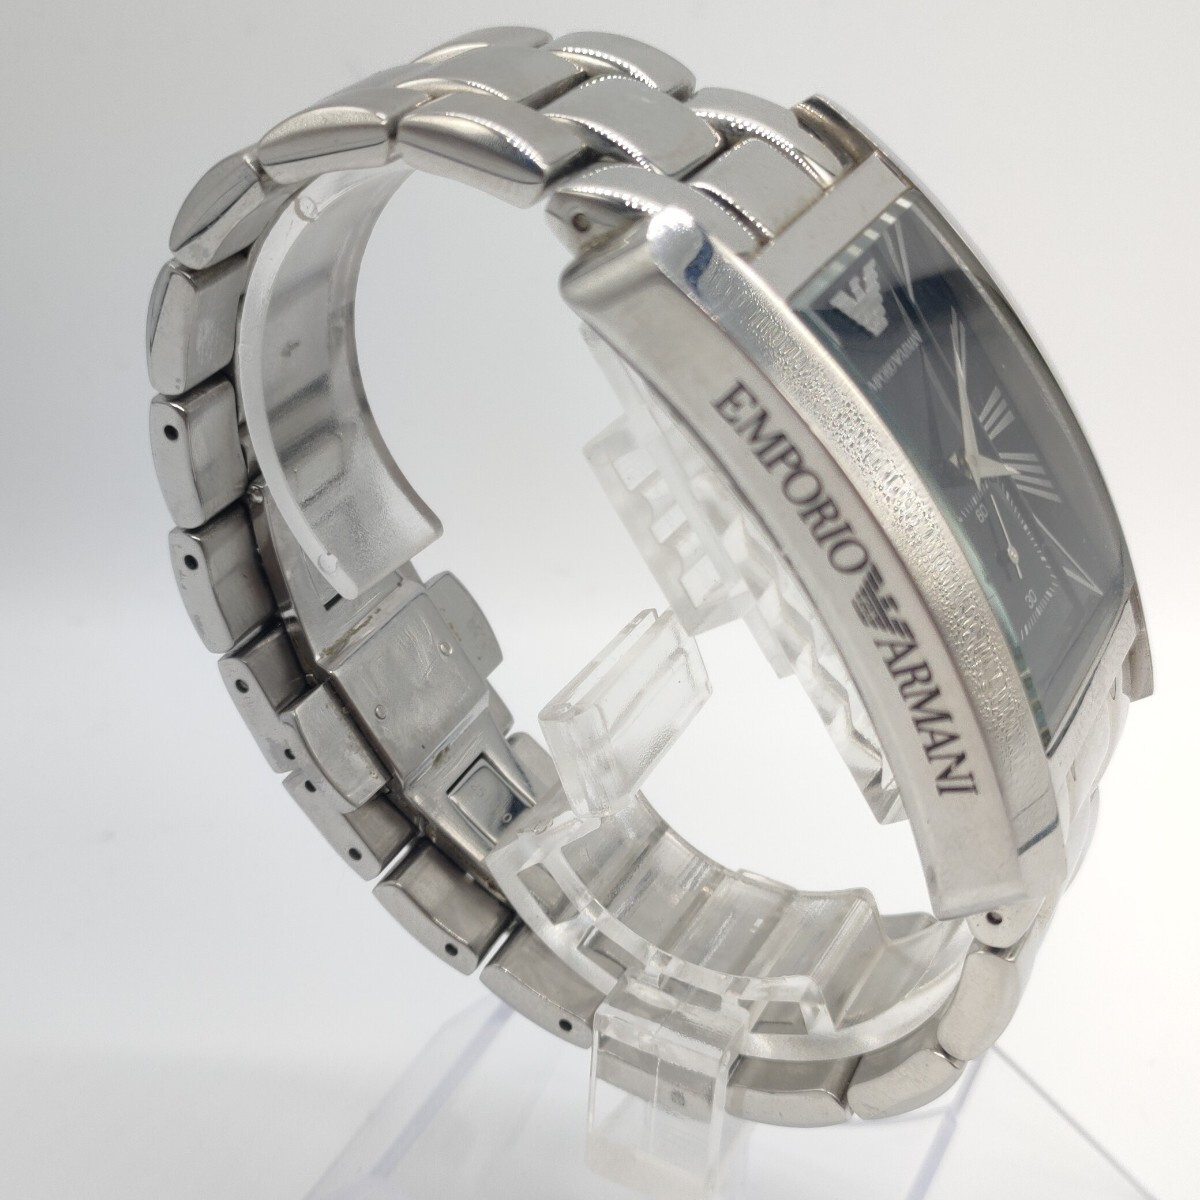 127 EMPORIO ARMANI メンズ 腕時計 時計 エンポリオ アルマーニ AR-0156 スモセコ スクエア クォーツ クオーツ QUARTZ 黒文字盤 SCH_画像4